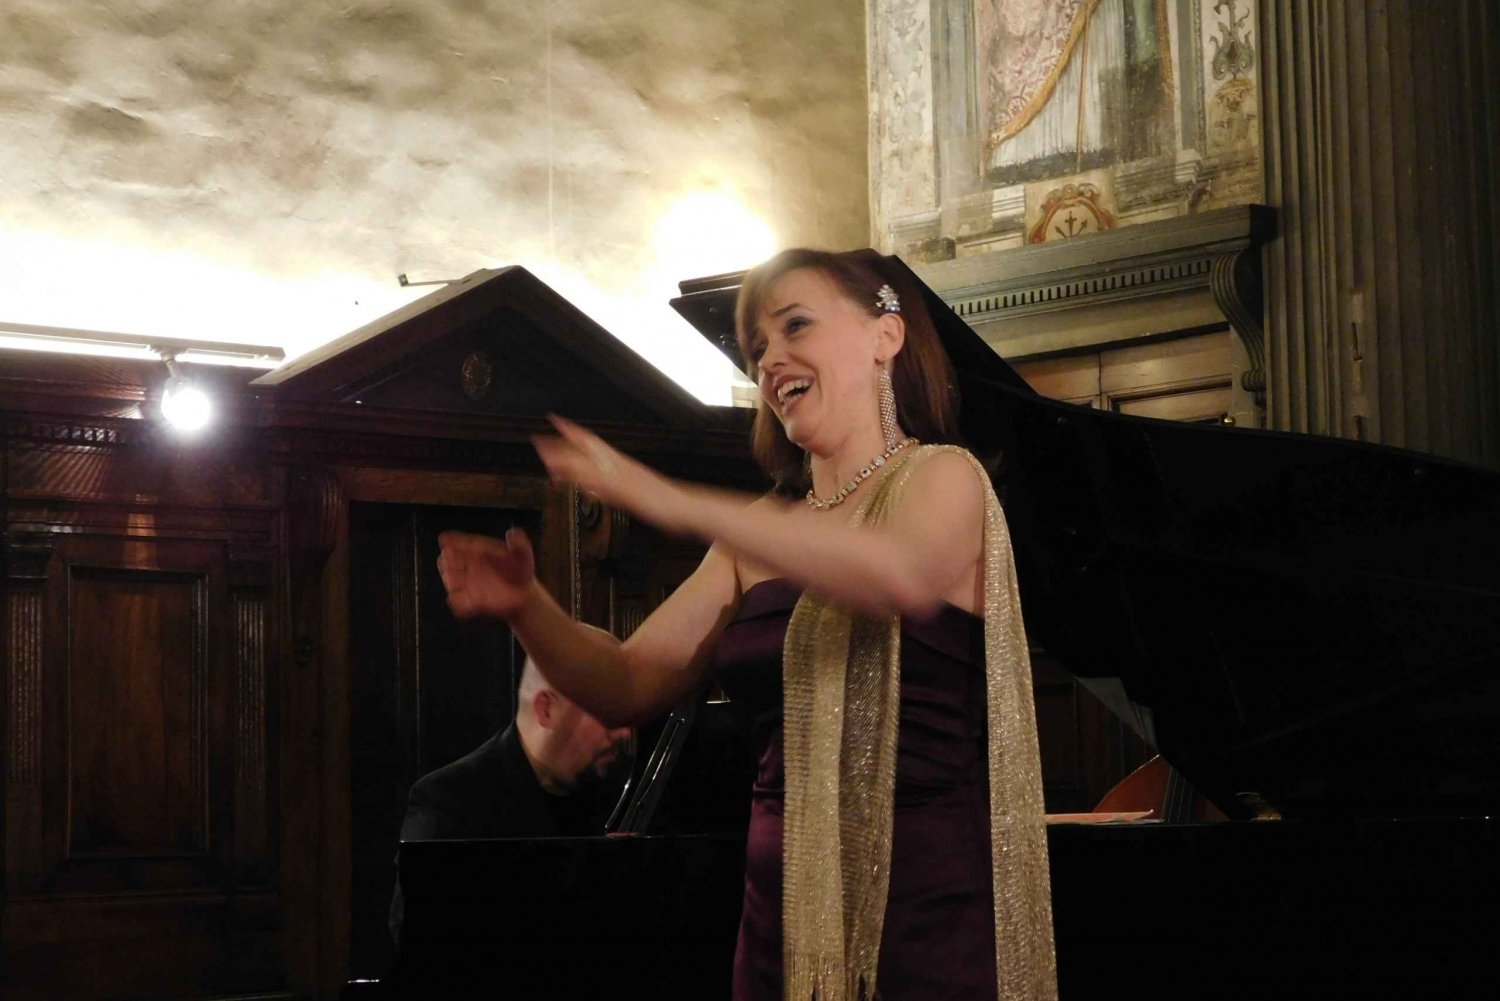 Firenze: Pizzamiddag og koncert med operaarier